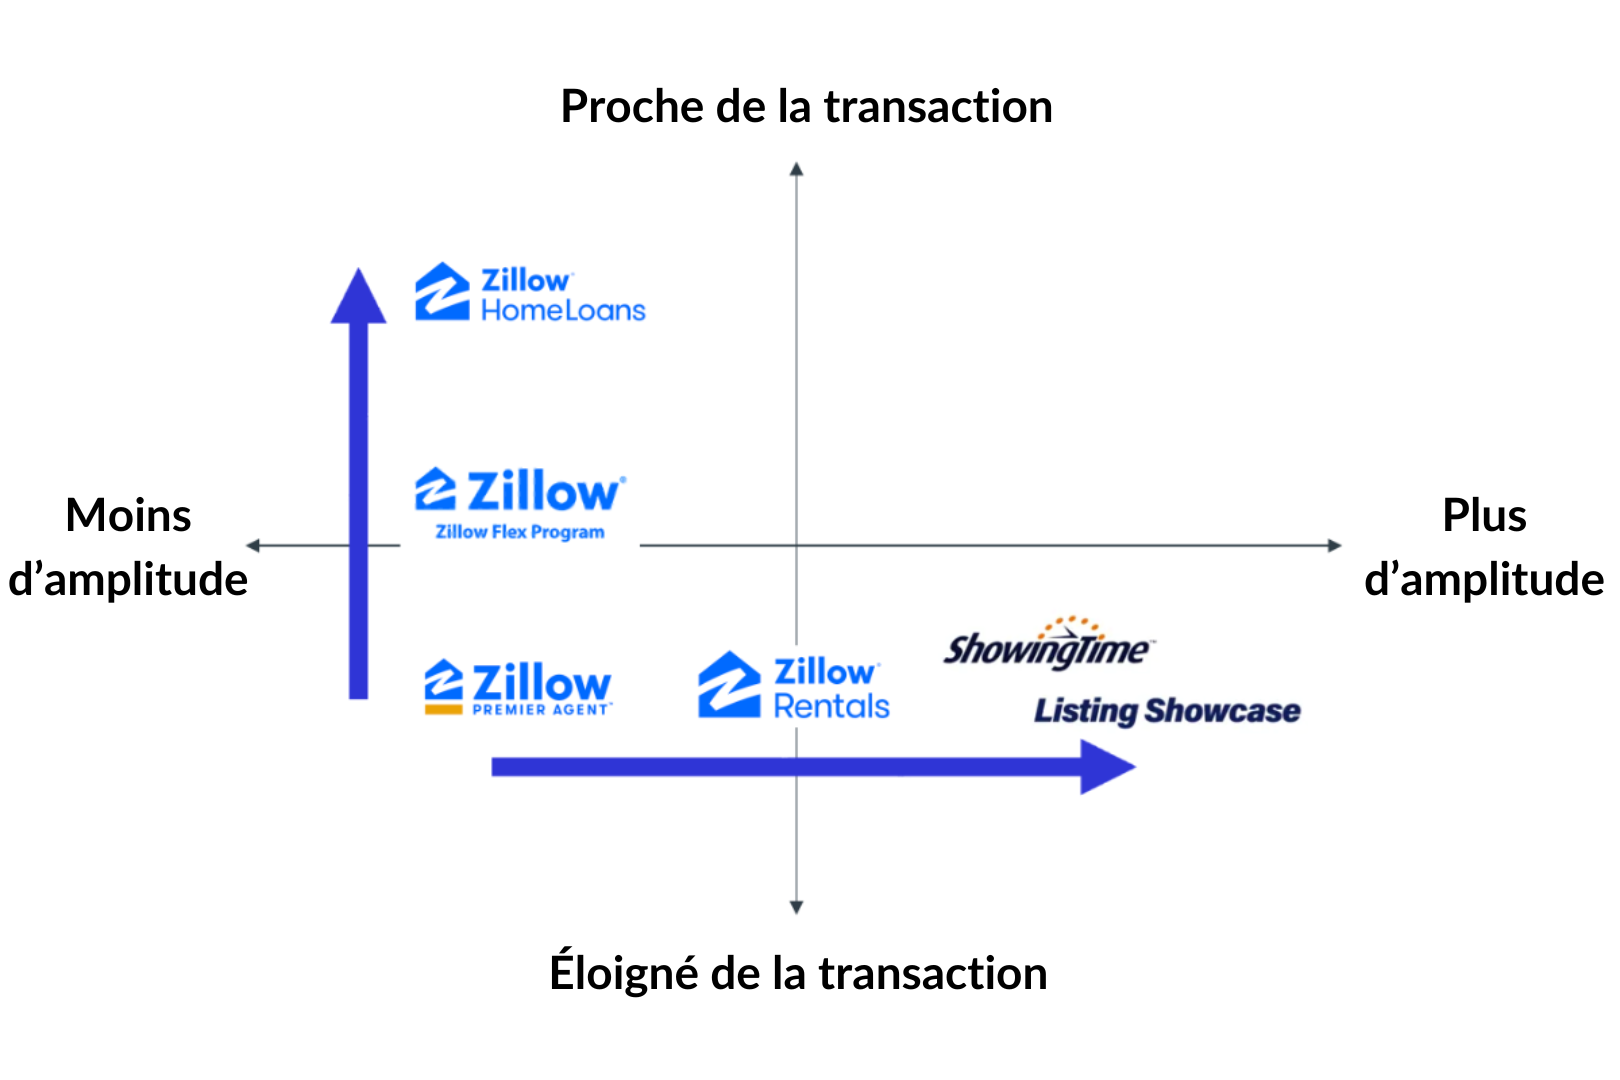 Le maillage des étapes de la transactions par les produits de Zillow